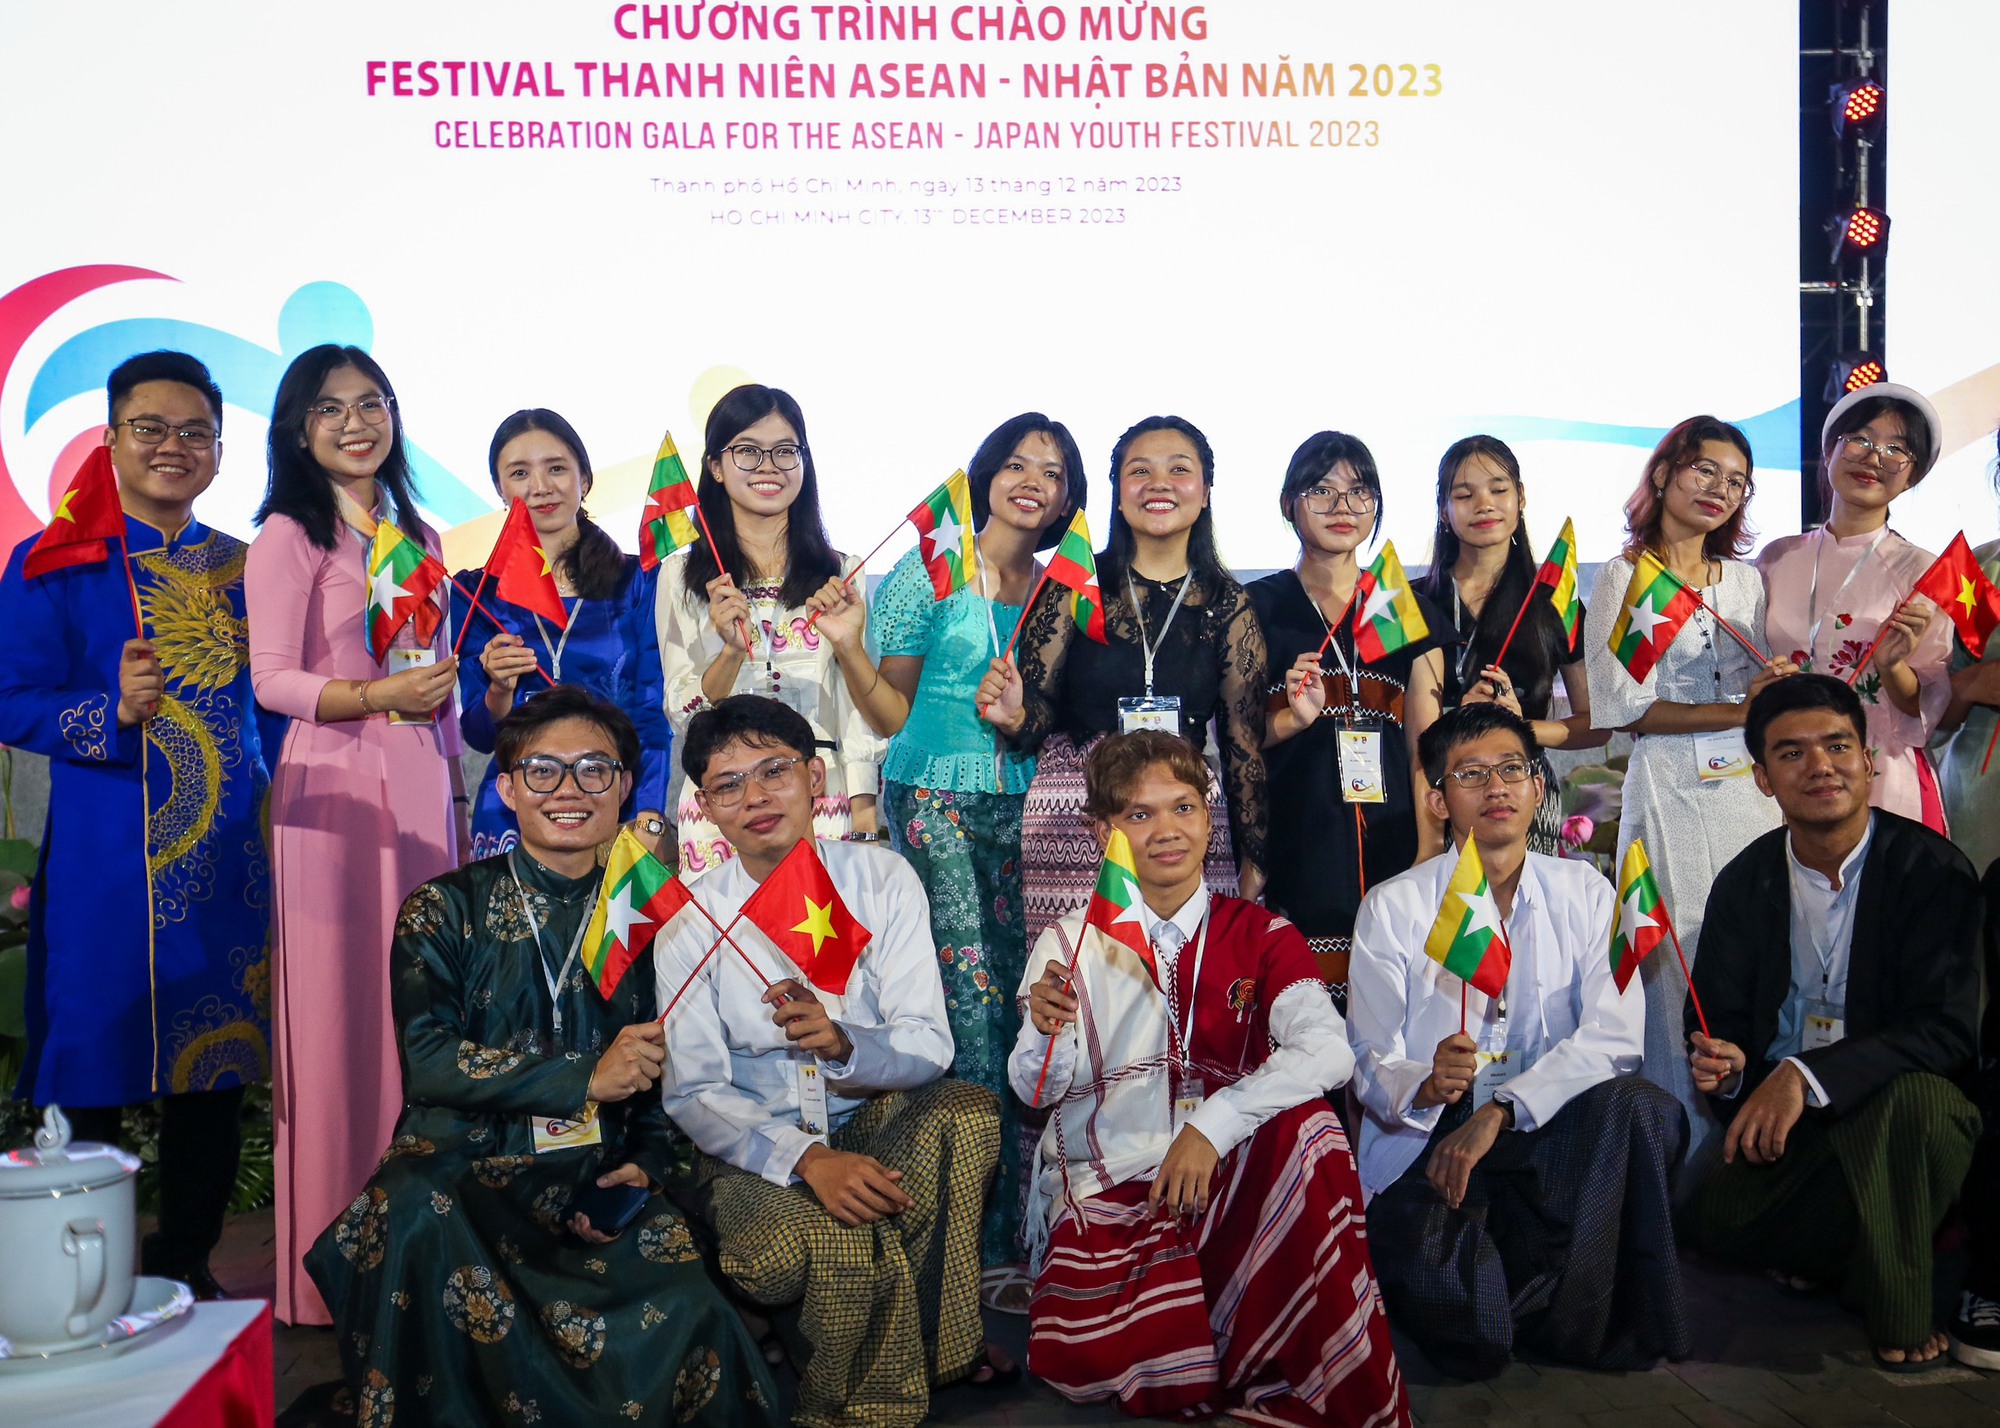 Thanh niên sẽ góp phần đưa quan hệ ASEAN - Nhật Bản phát triển vững mạnh - Ảnh 4.